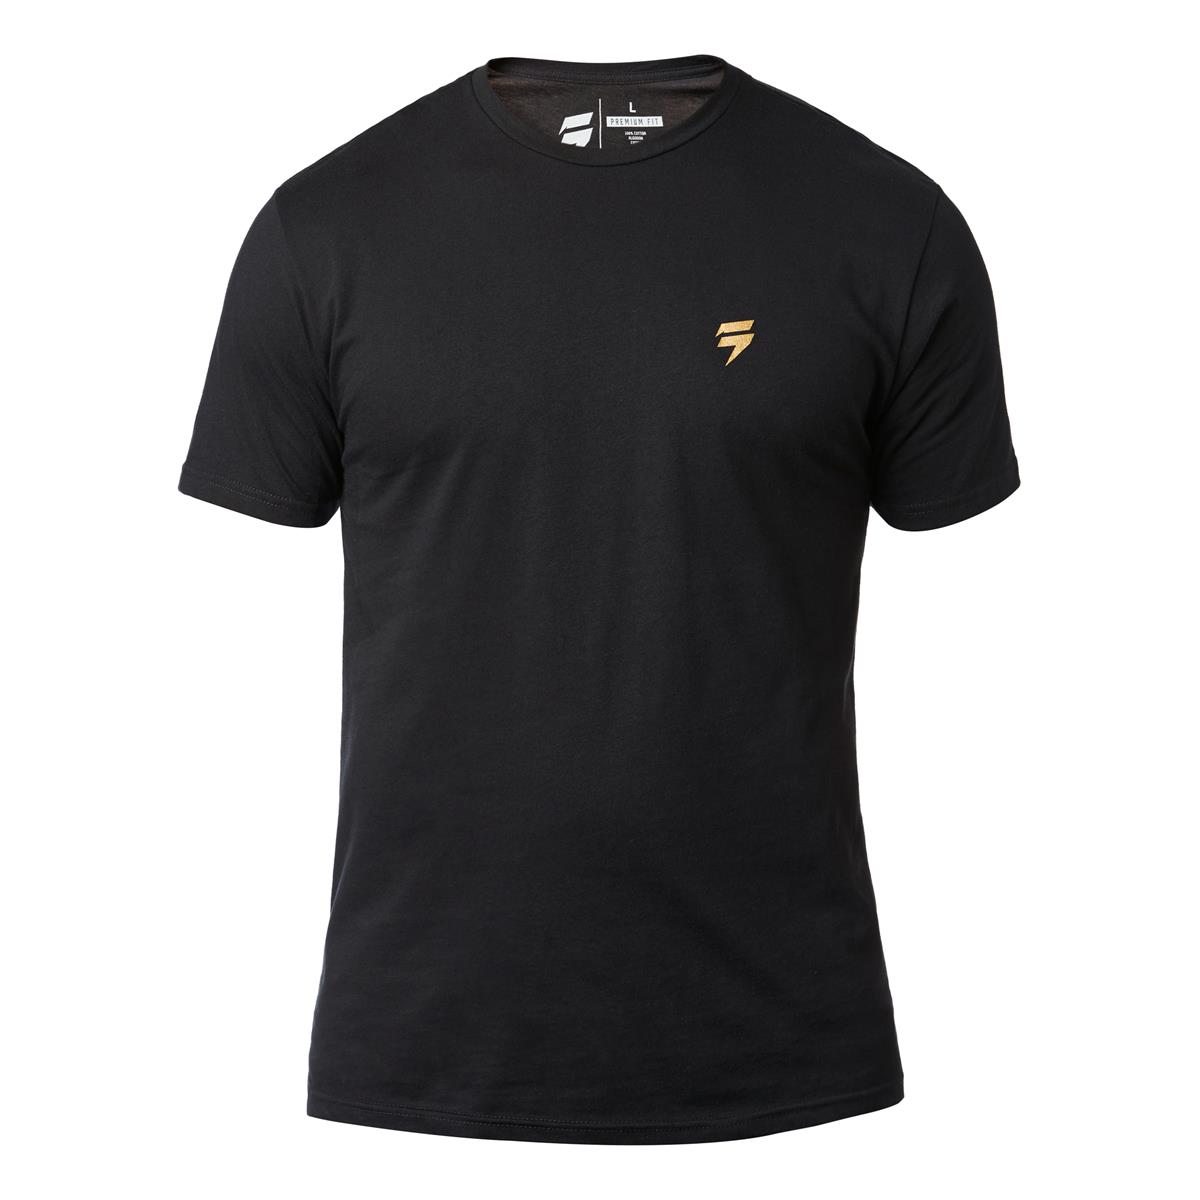 Shift T-Shirt 3lack Label Copa Schwarz - Special Edition Muerte